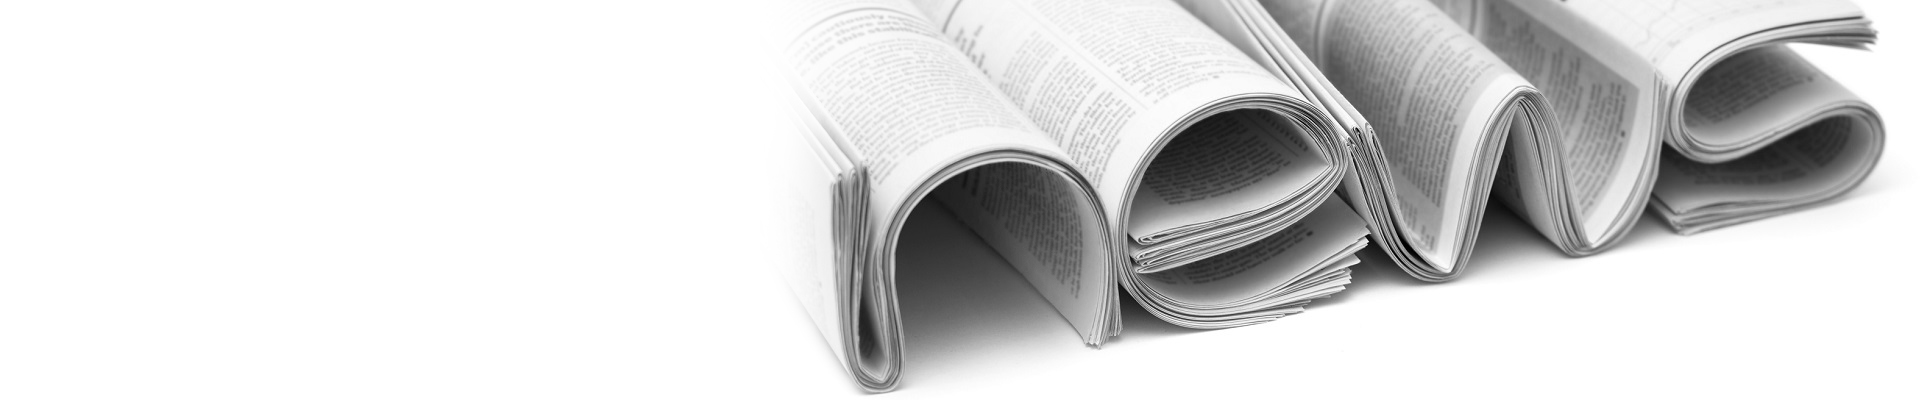 Zeitungen formen das Wort News auf weißem Hintergrund